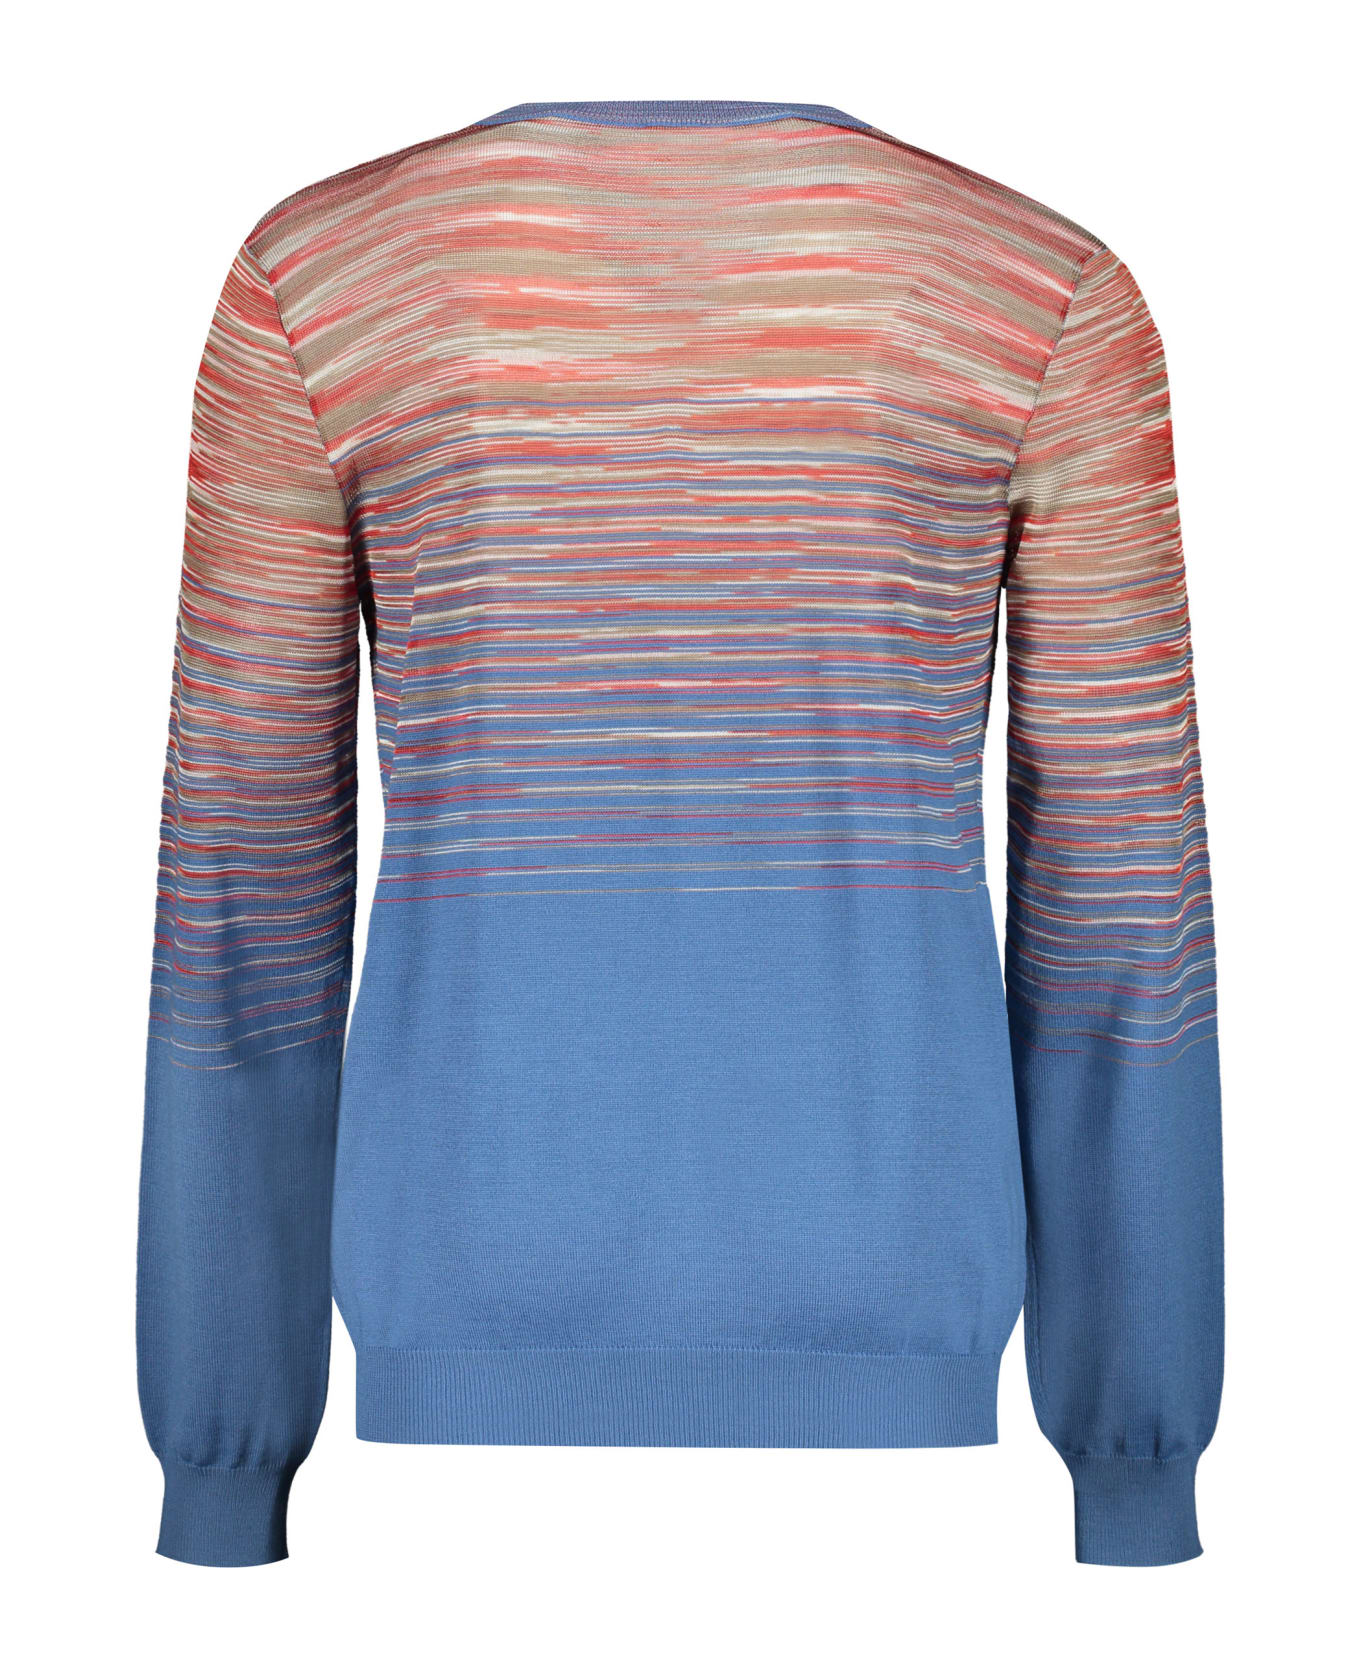 M Missoni Wool V-neck Sweater - Light Blue ニットウェア